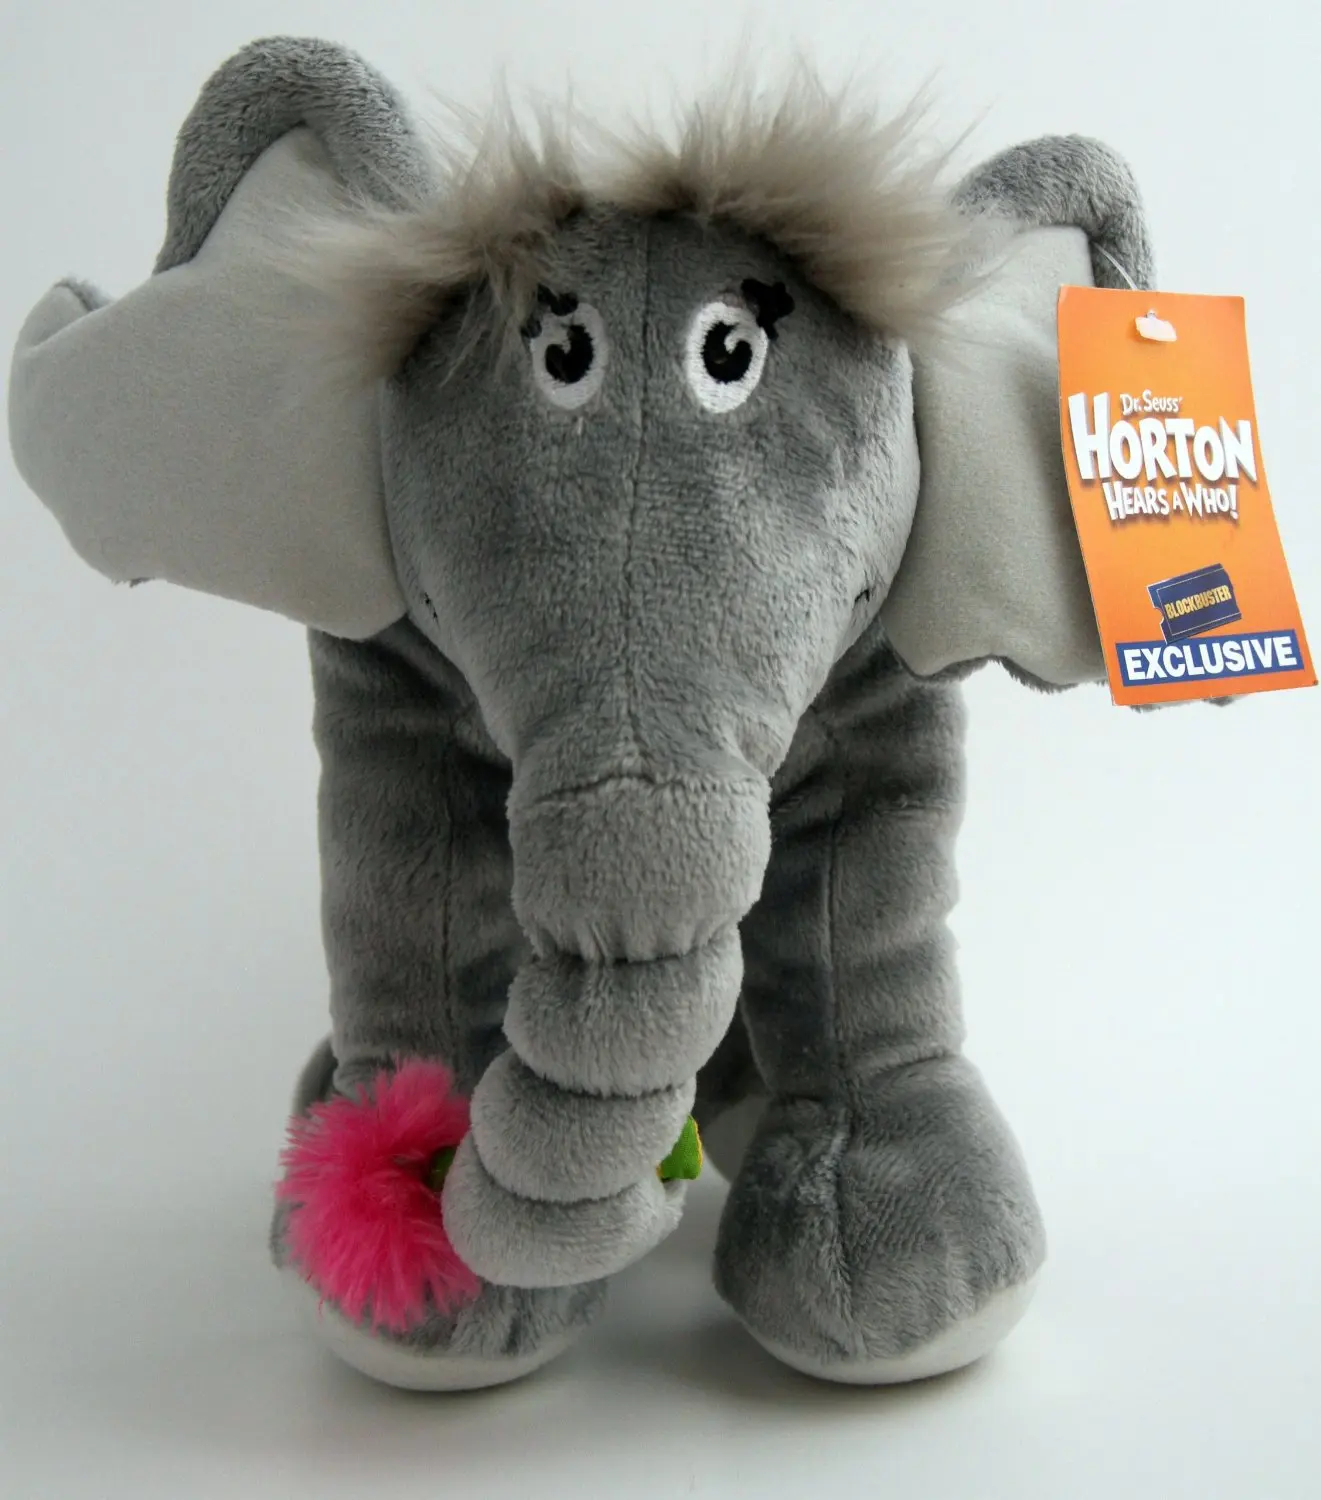 horton hears a who stuffed elephant